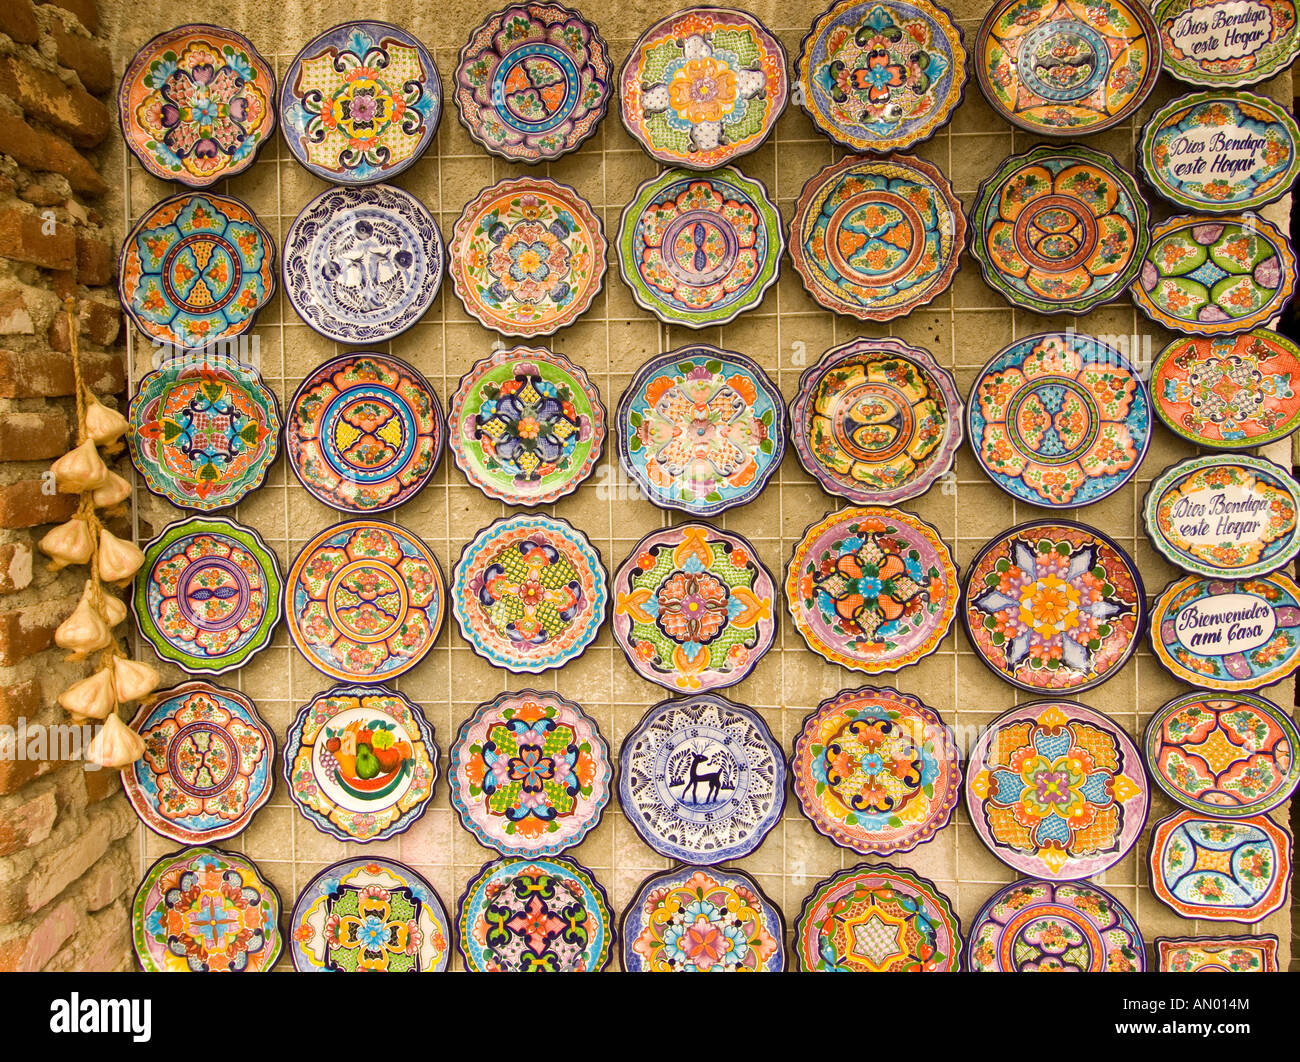 Messico Baja California Todos Santos Art Shop visualizzazione di piastre in ceramica lungo una strada principale Foto Stock